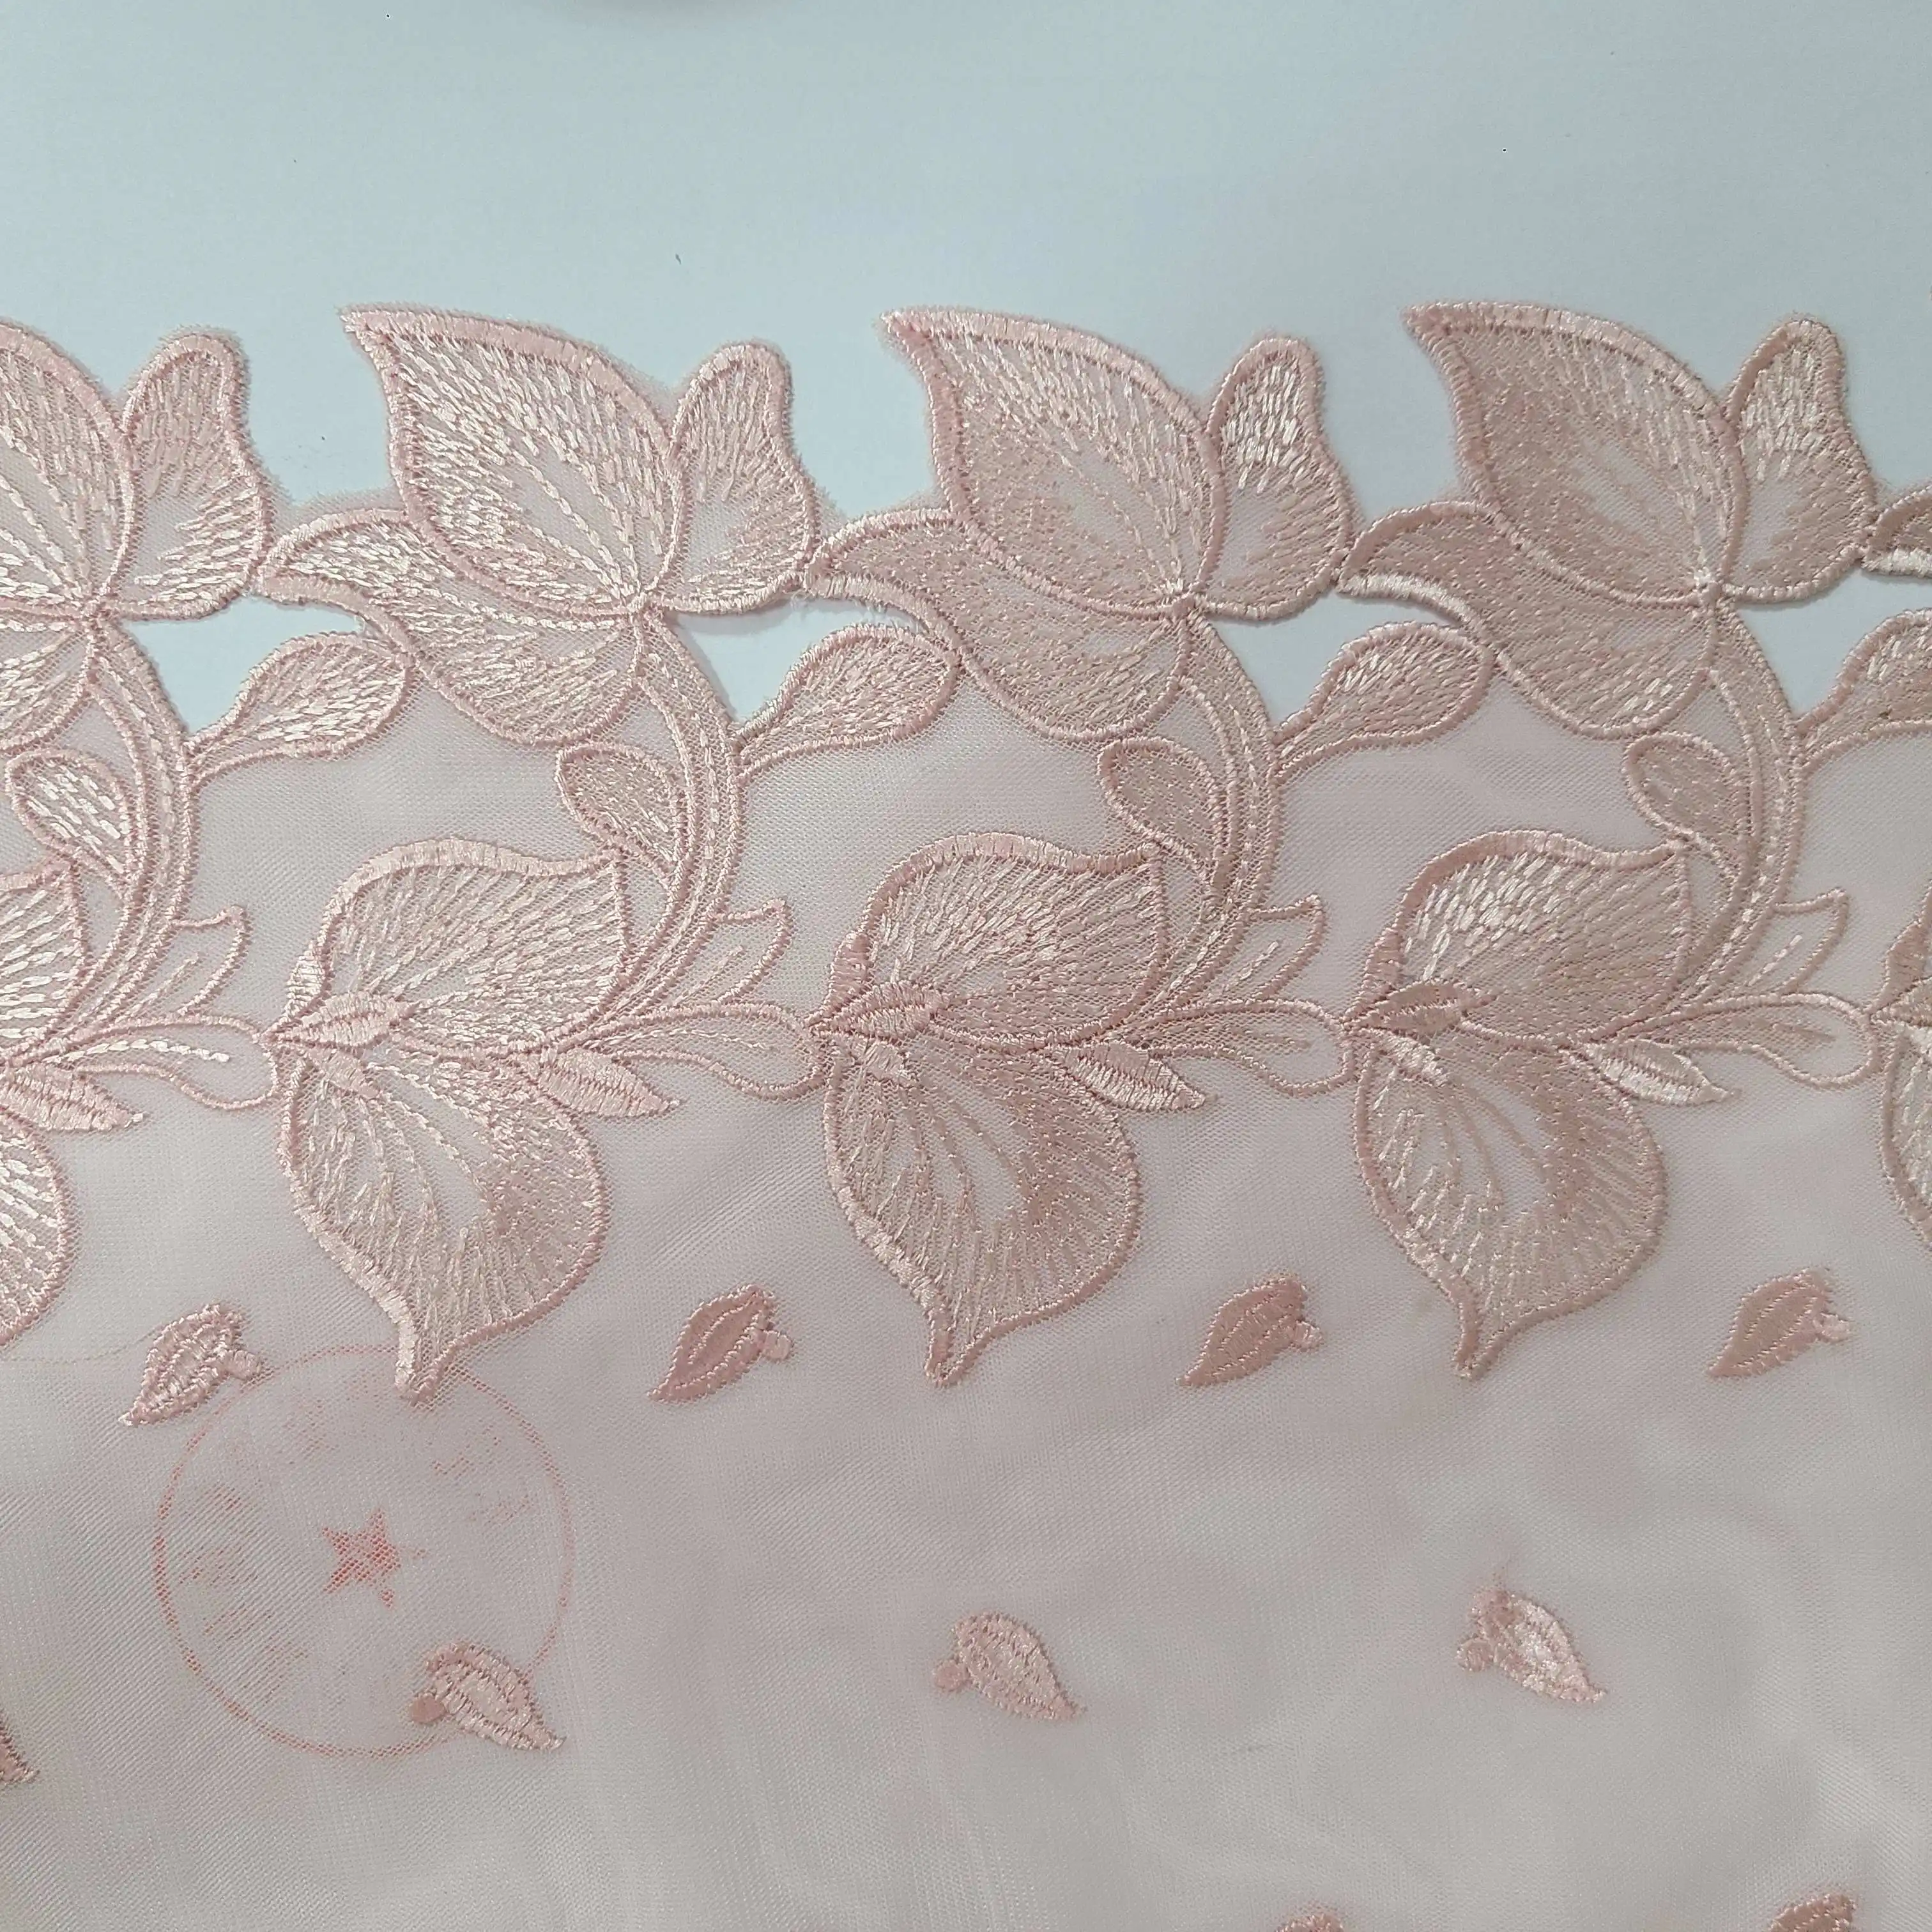 Diseño de flores de lujo tela de encaje bordado Diseño perforado borde encaje de tul para Lencería